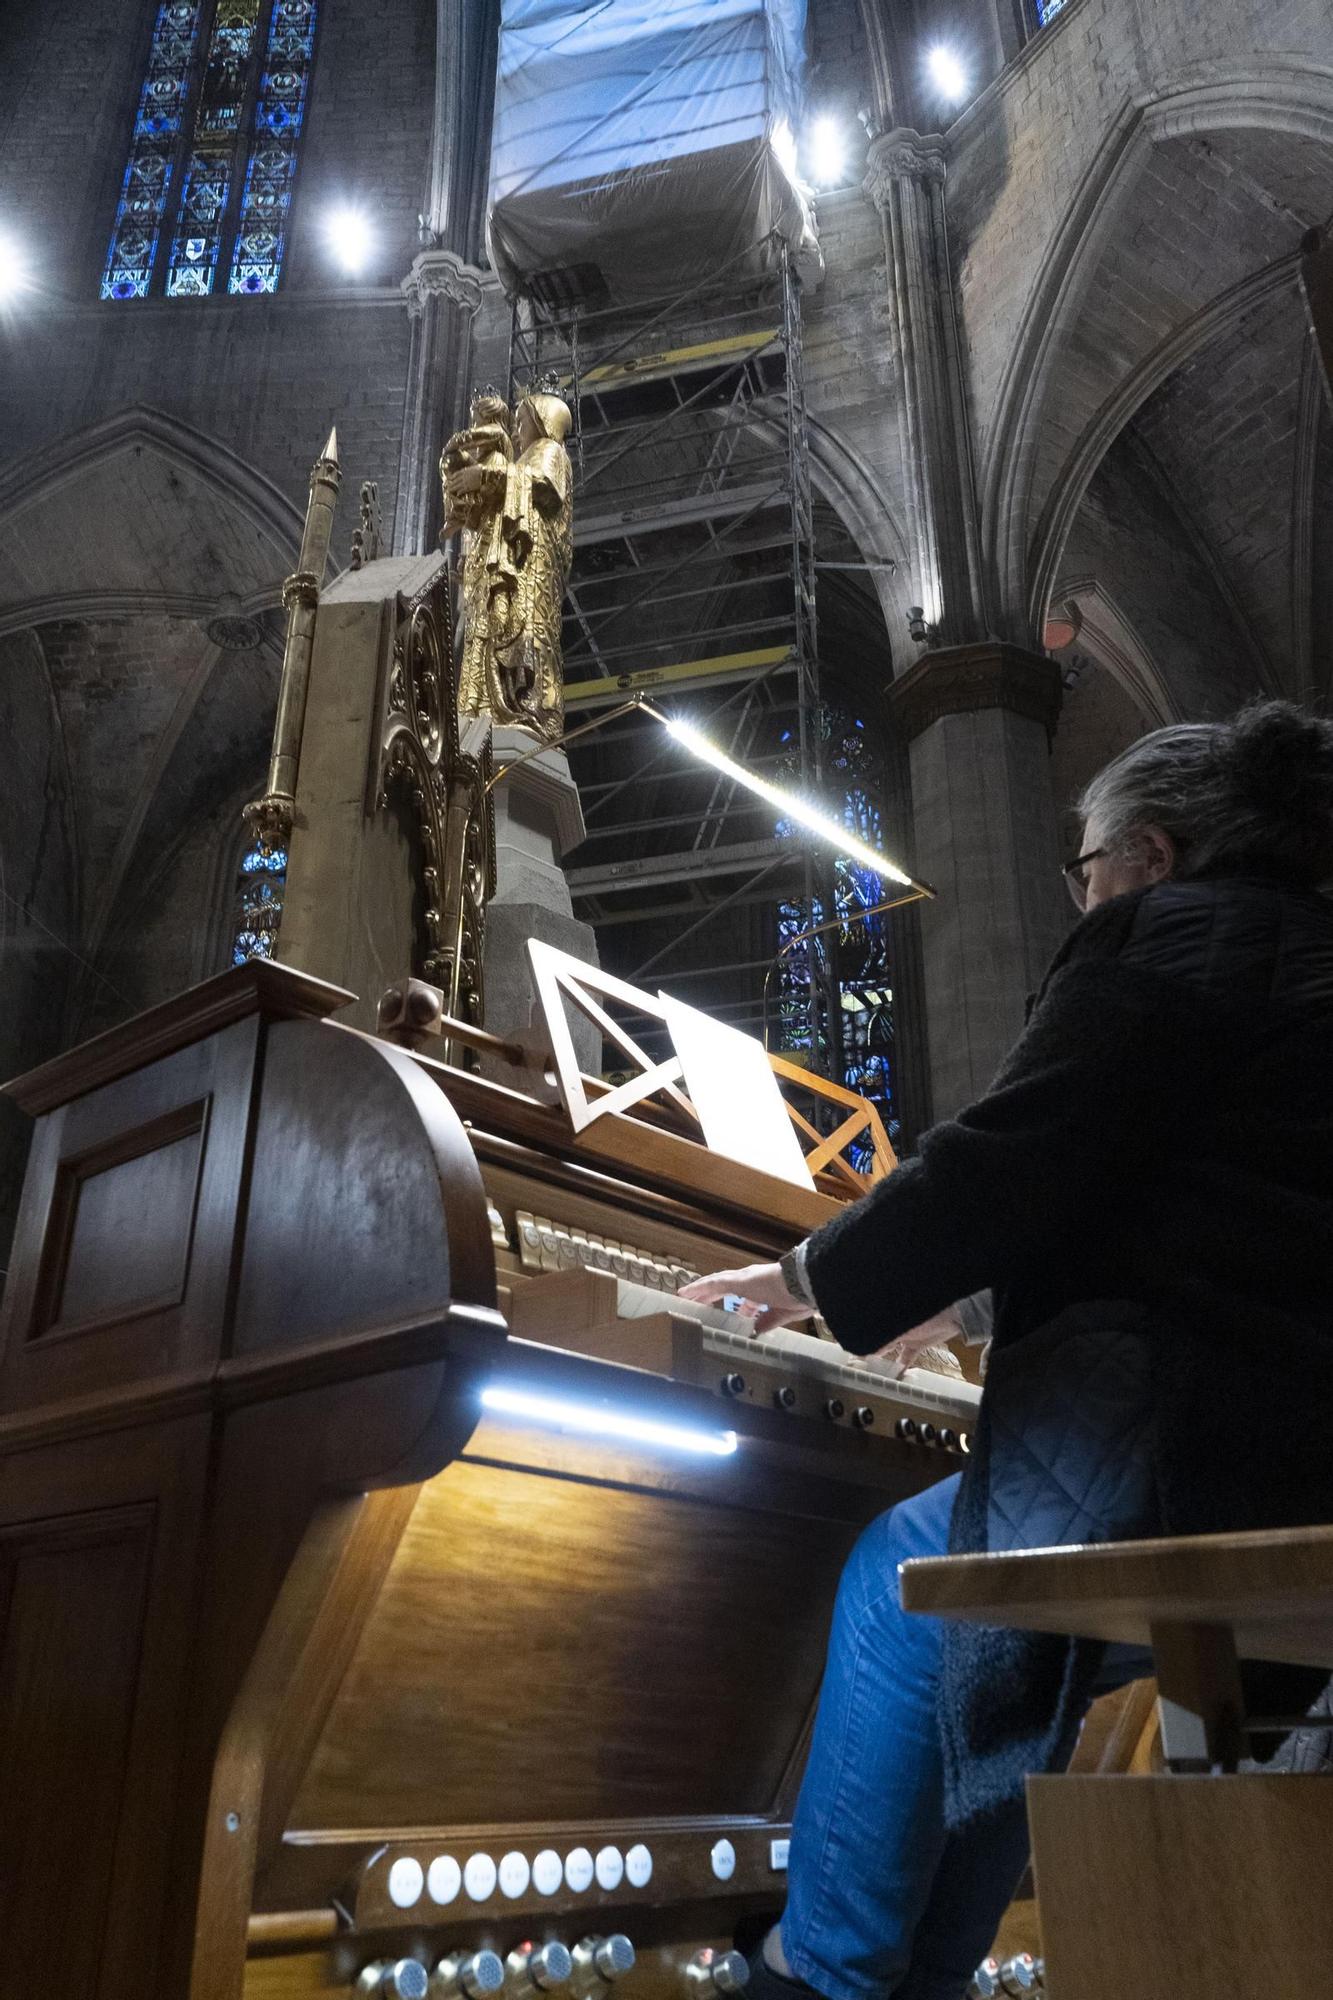 Homenatge a Pere Roca i Fius, "decorador", per la seva dedicació a la basílica de la Seu